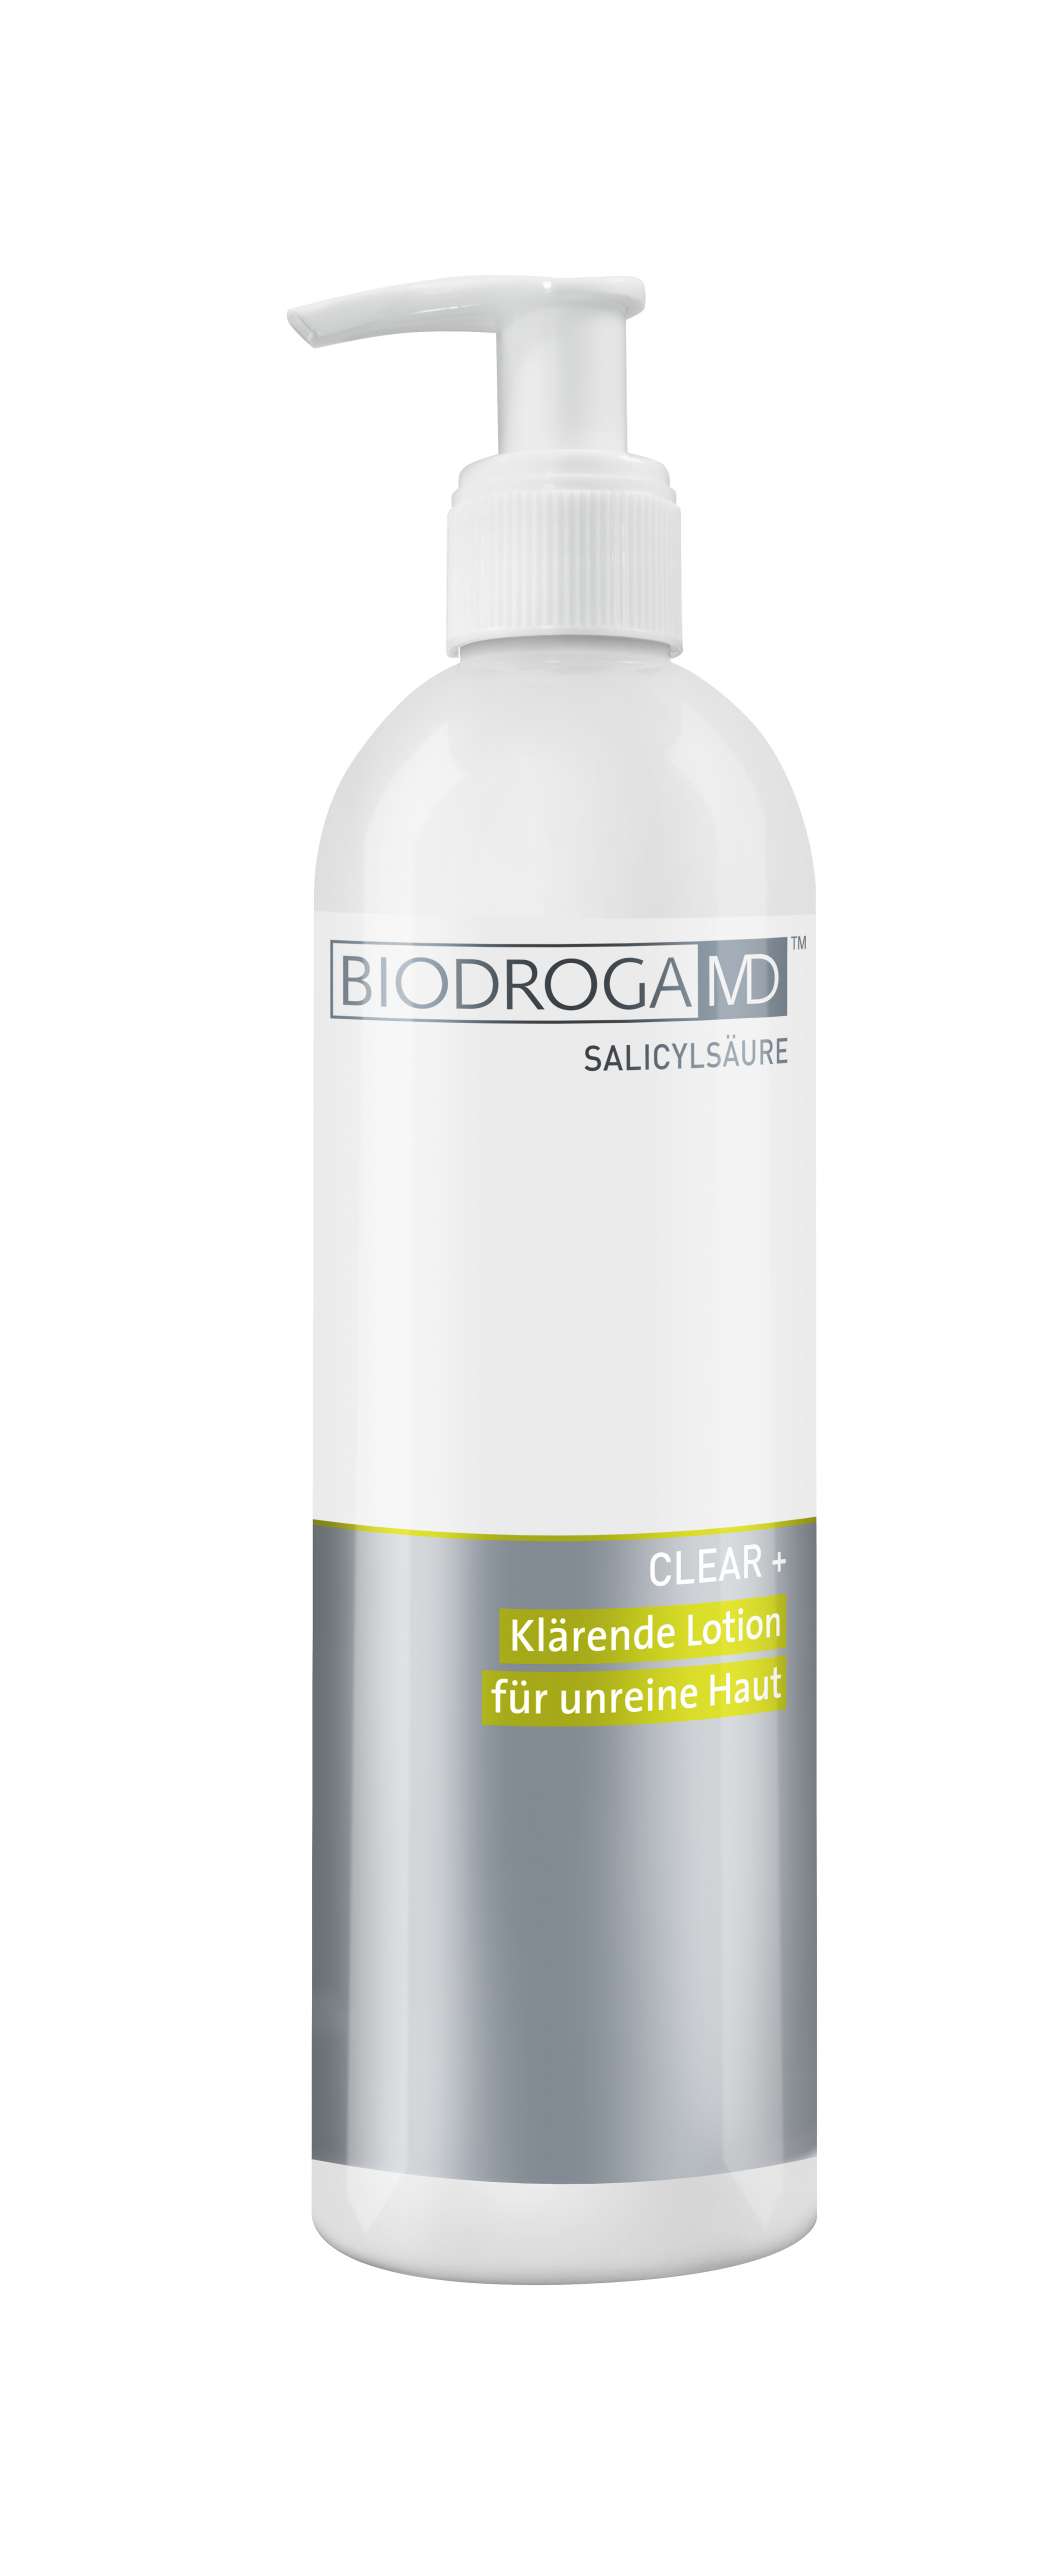 Biodroga MD Clear+ Clarifying Lotion